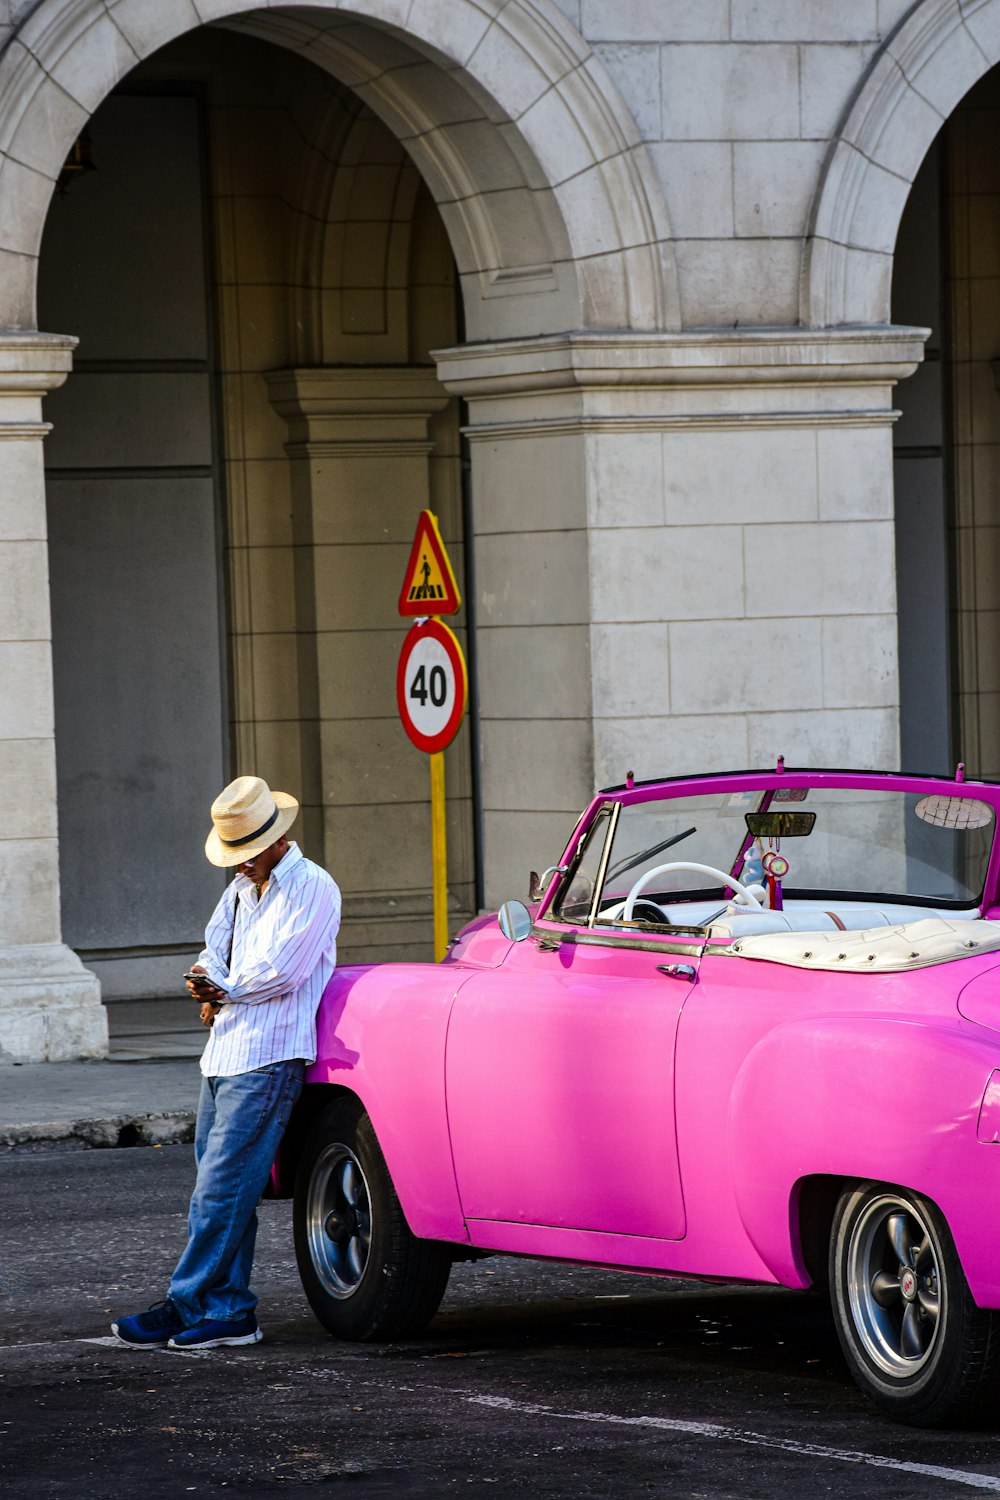 a man standing next to a pink car